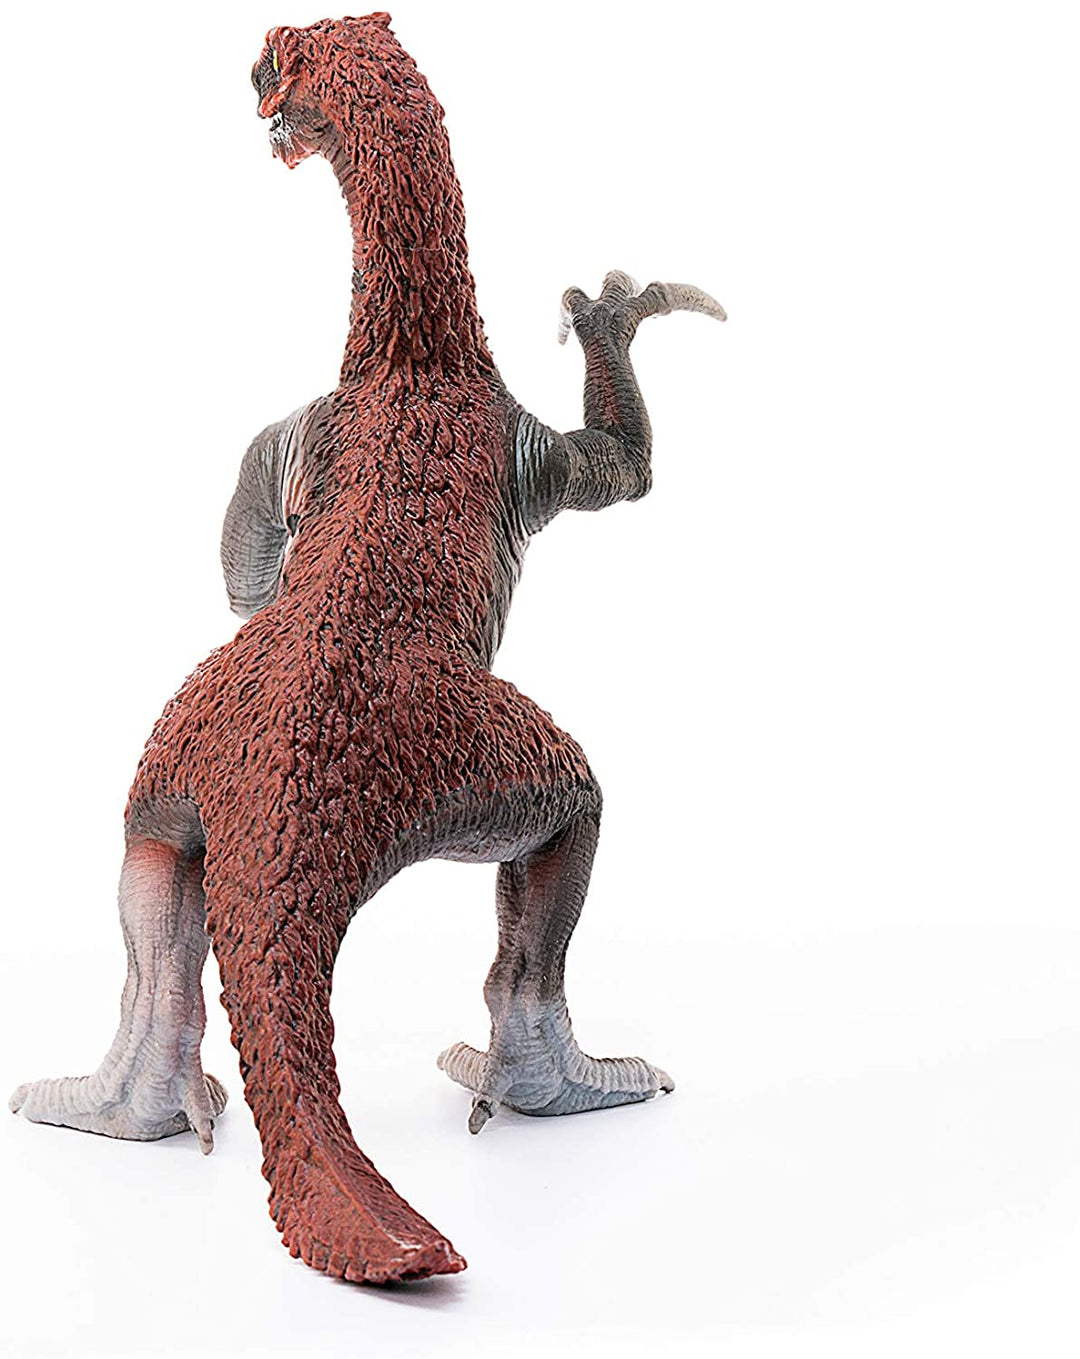 Schleich Dinosaurs 15006 Therizinosaurus juvenile